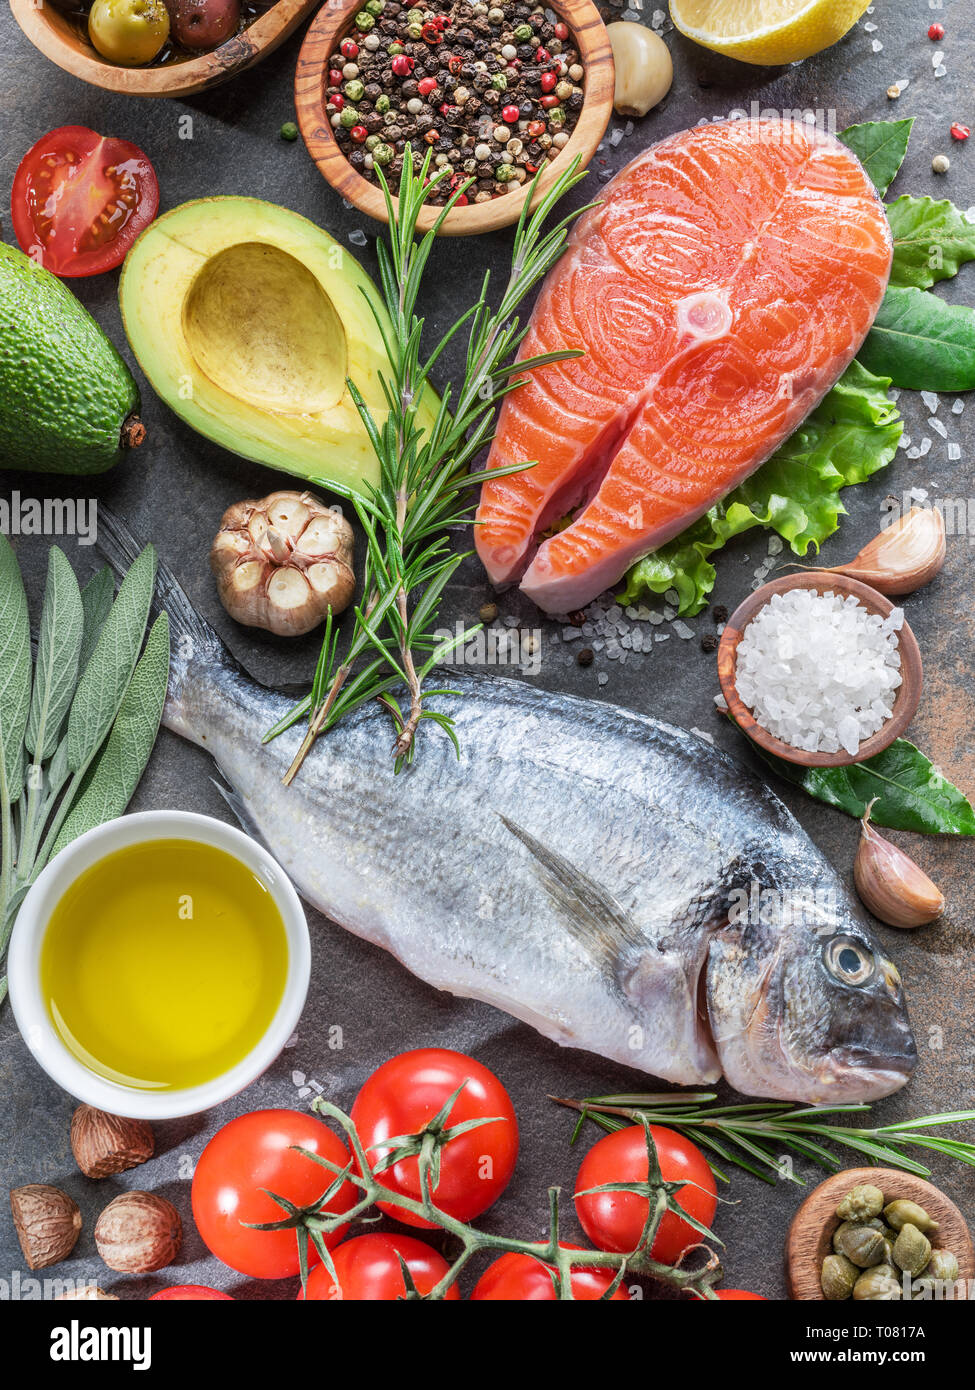 Materie dorado pesce e bistecca di salmone con spezie e verdure sulla scheda di grafite. Vista dall'alto. Foto Stock